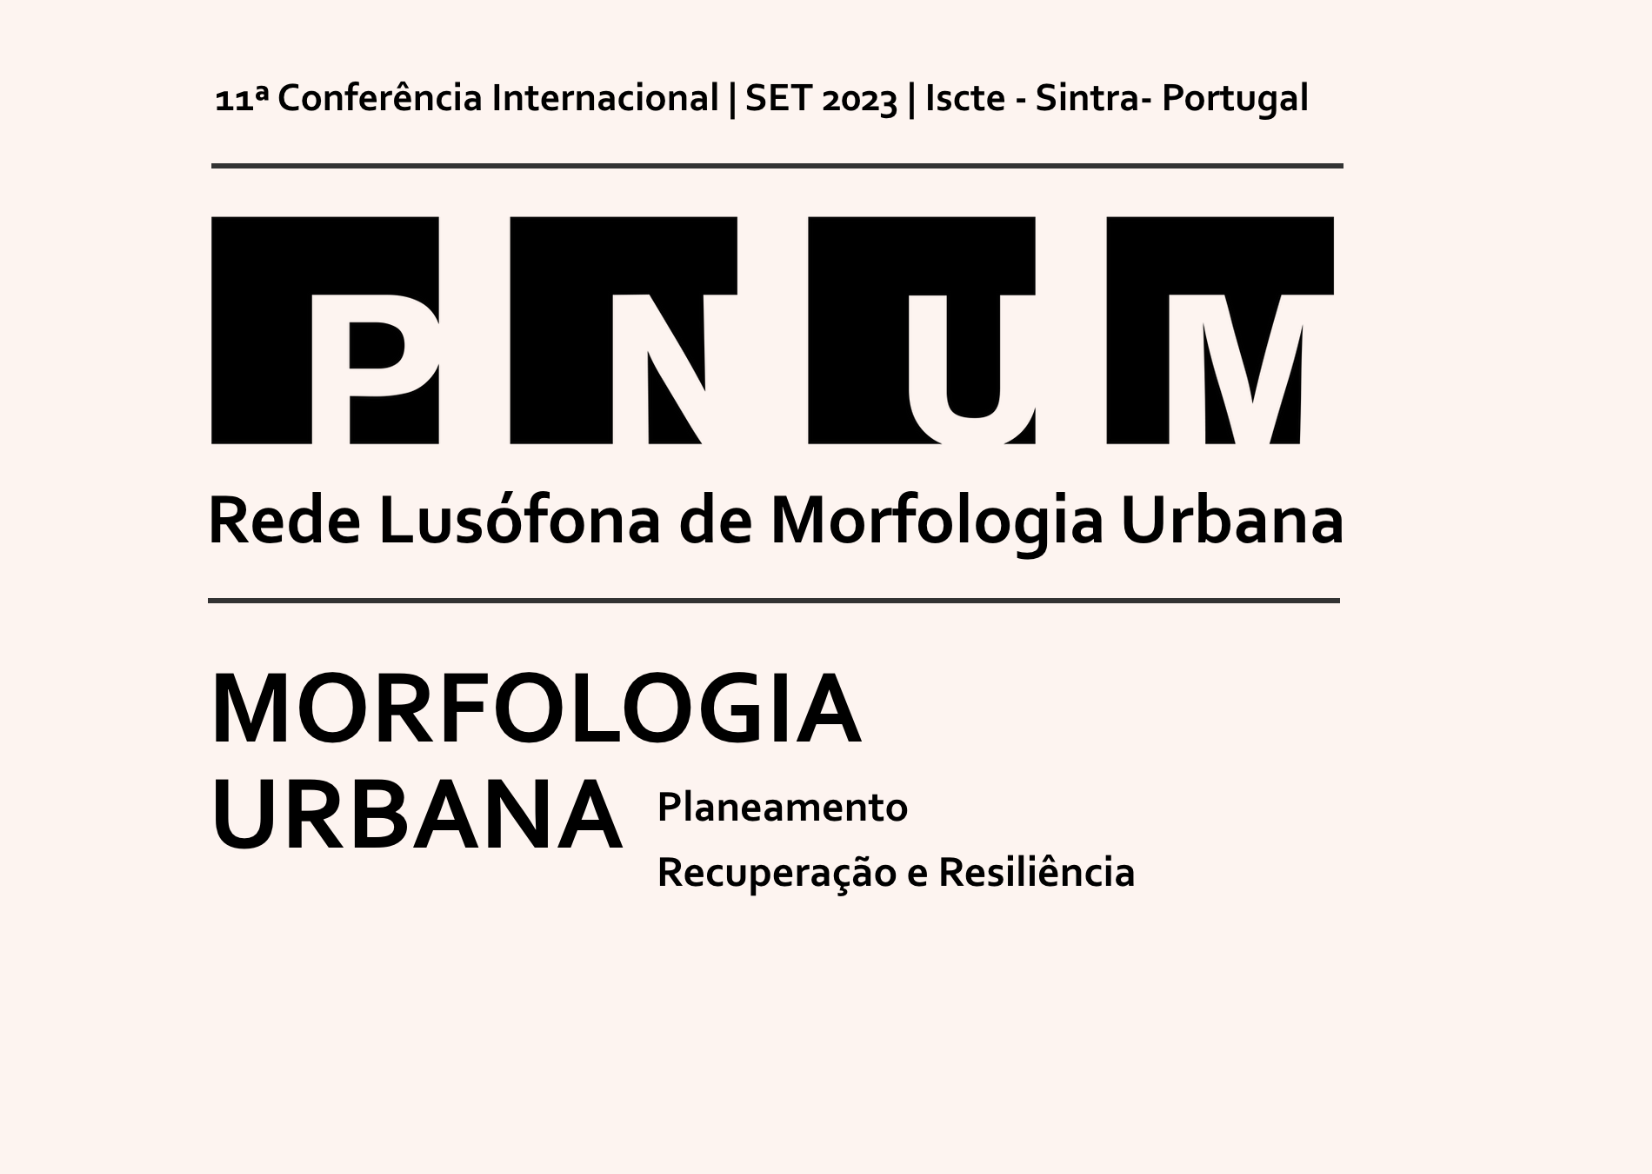 11ª Conferência Internacional - PNUM2023 - Morfologia Urbana